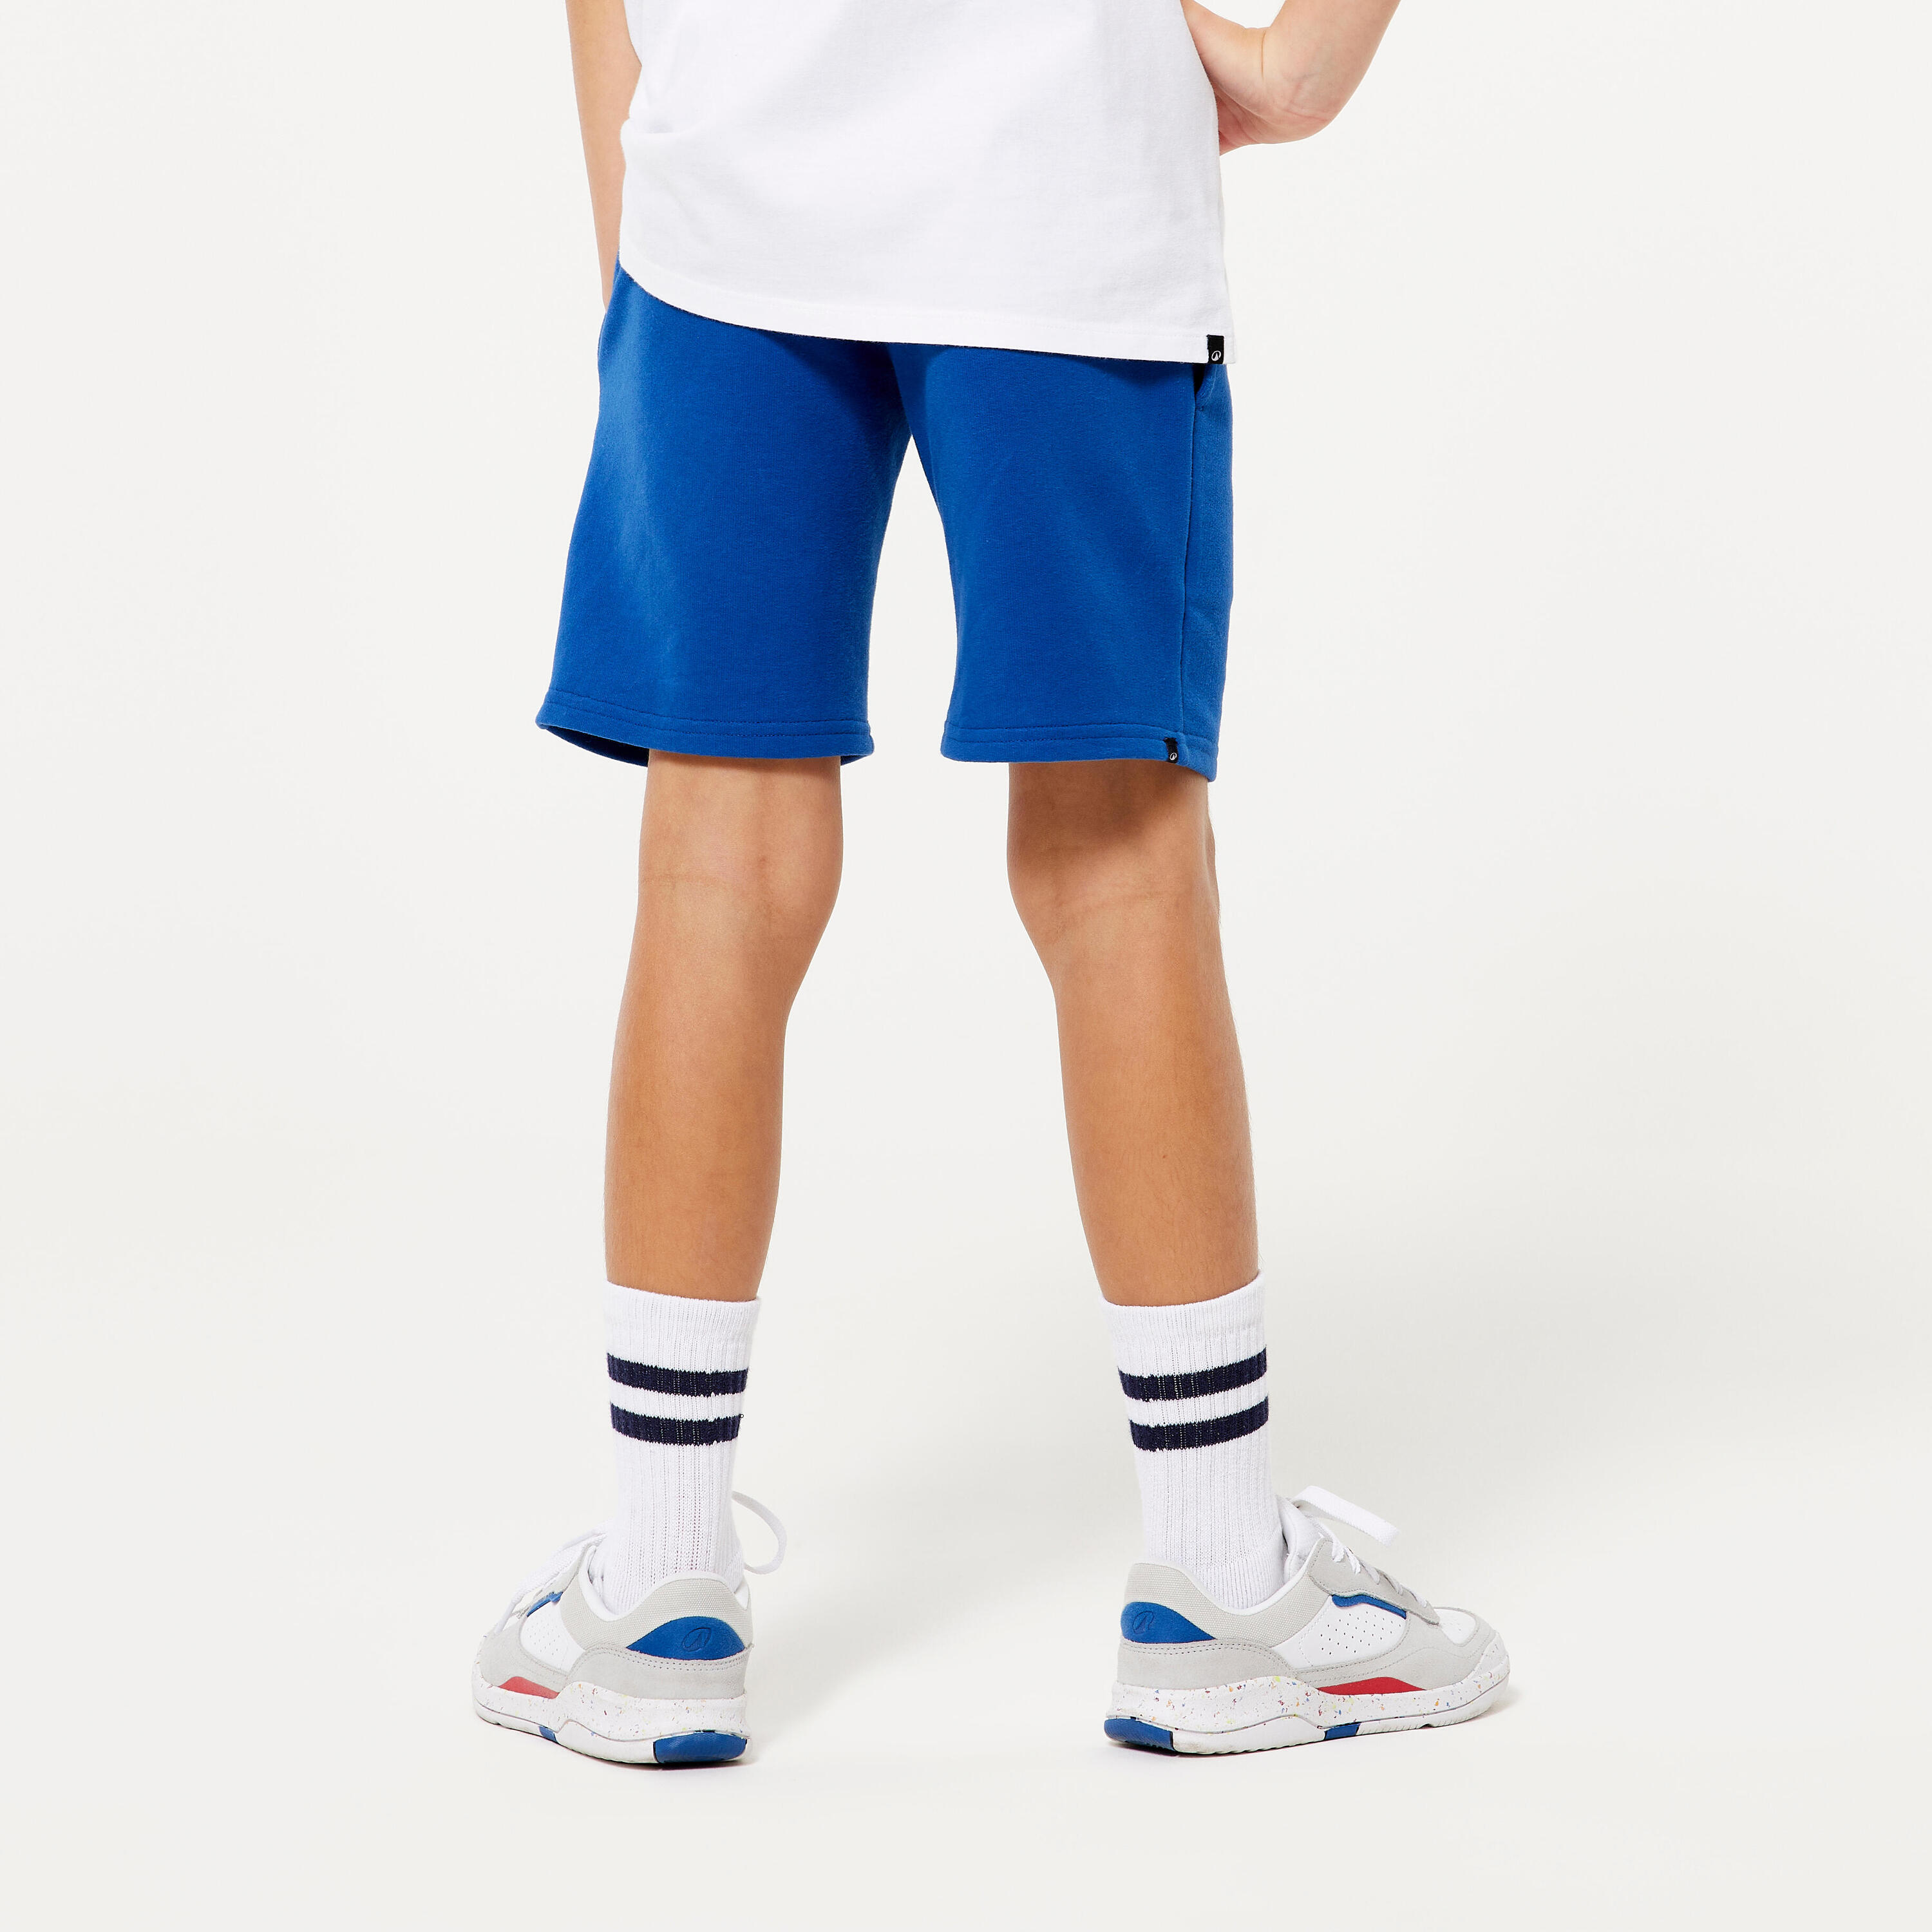 Kids' Unisex Cotton Shorts - Blue 4/4